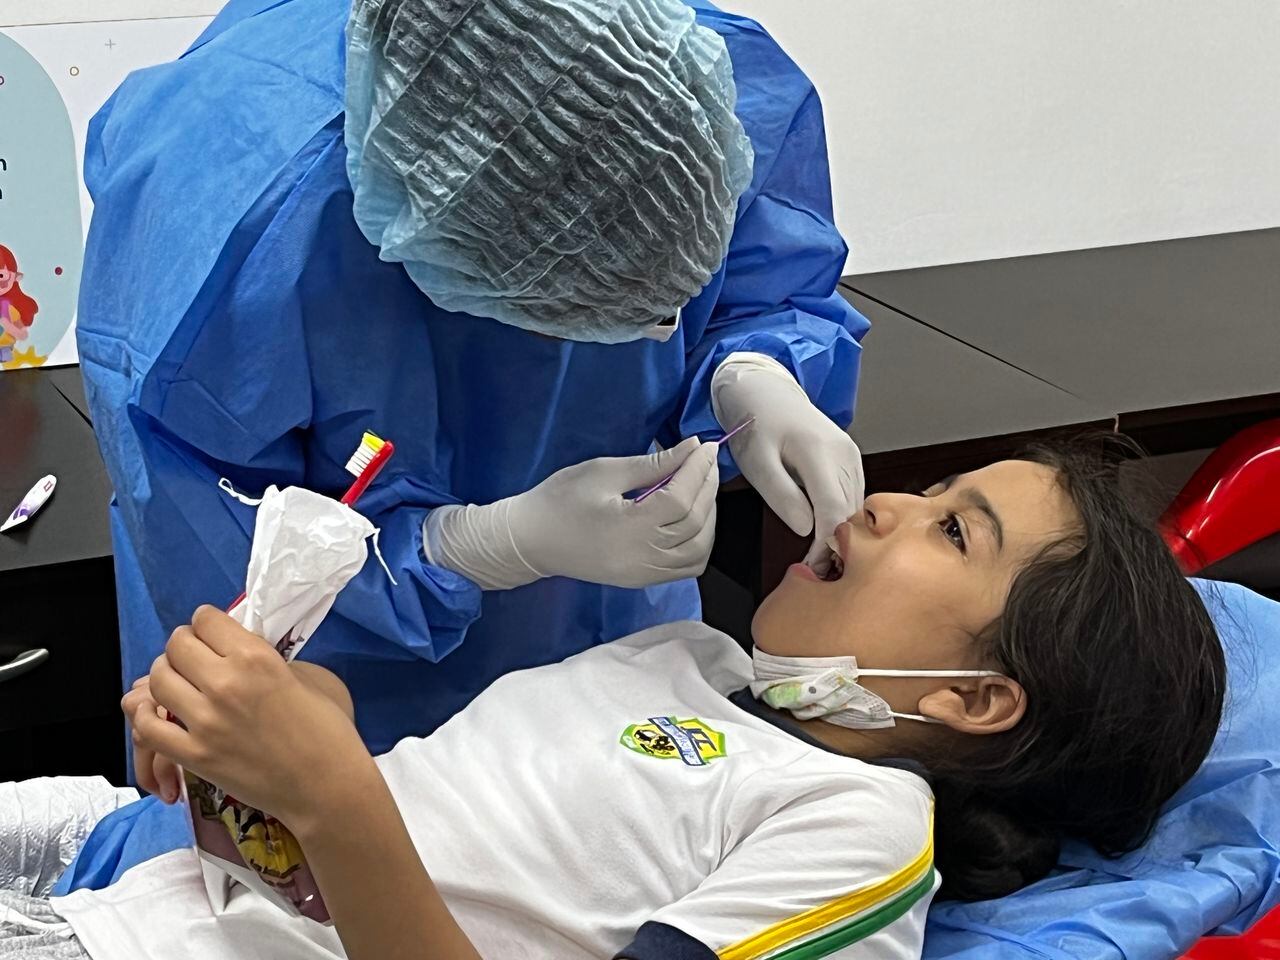 El barniz se adhiere al diente por medio de una aplicación que es indolora, fácil, y rápida, por parte de los profesionales de odontología, que es segura hasta para los niños más pequeños.